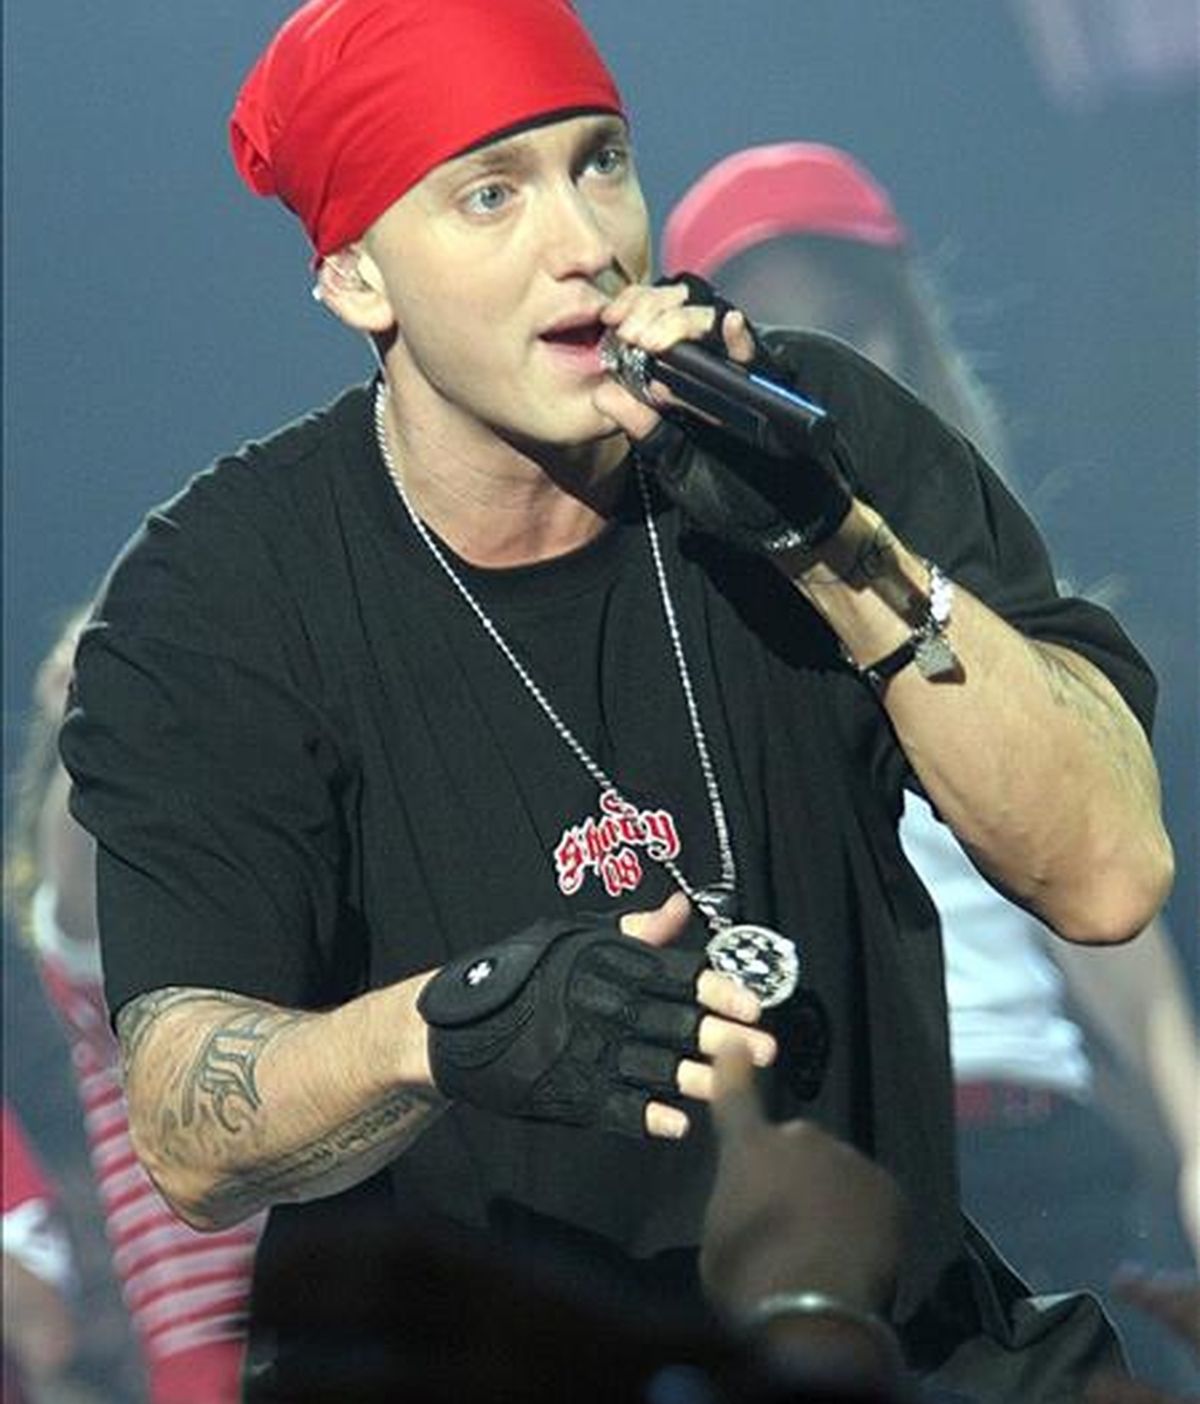 Fotografía de archivo del 18 de noviembre de 2008 del actor estadounidense Eminem quien ha reconocido su adicción a las drogas. EFE/Archivo